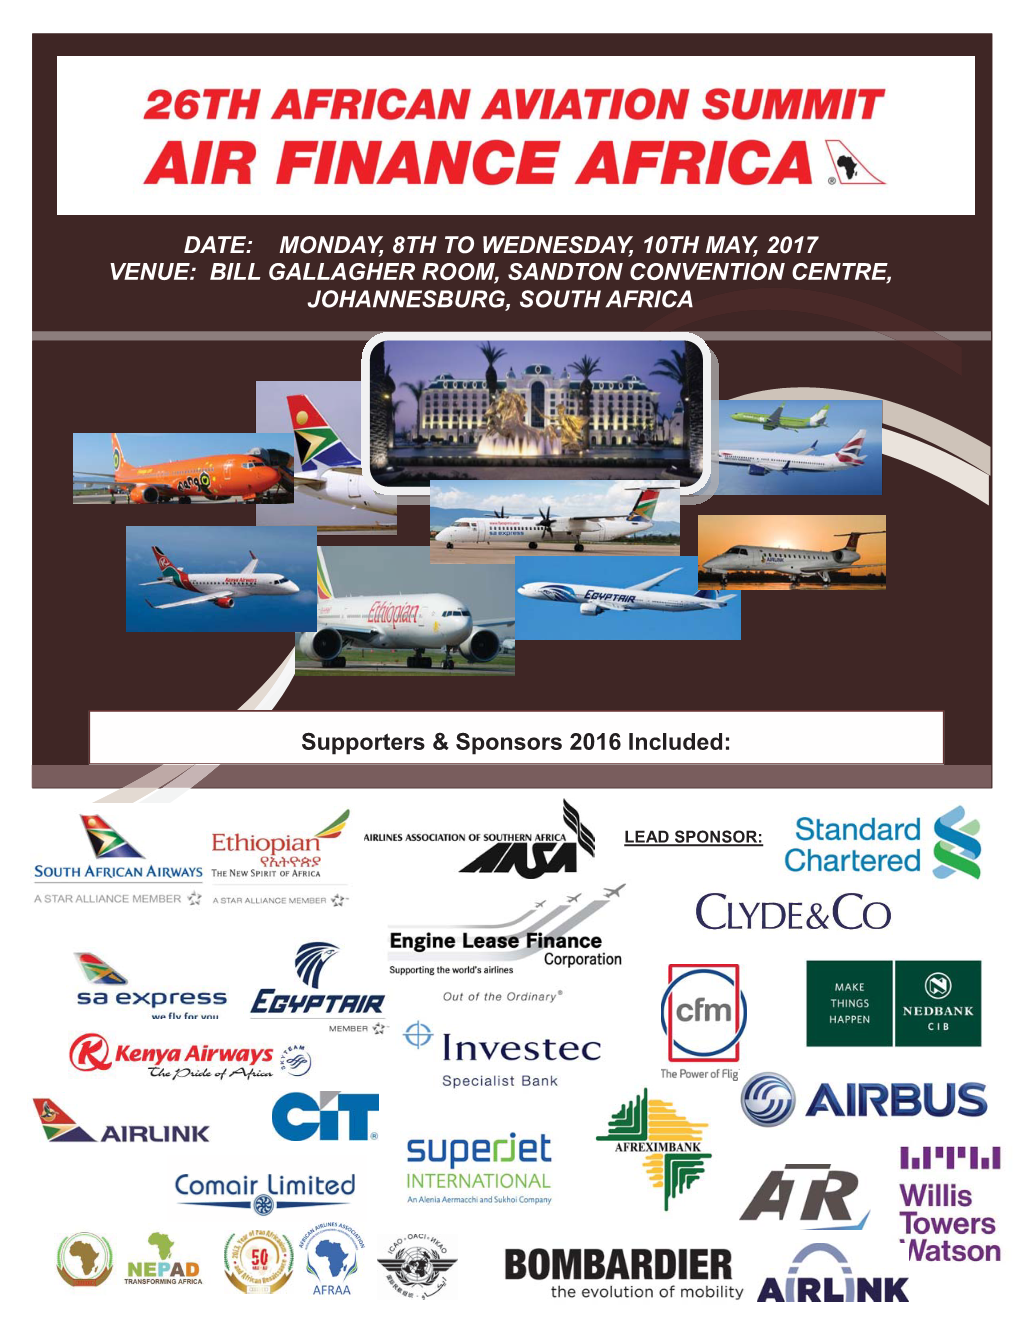 African Aviation Summit: Air Finance Africa 2017